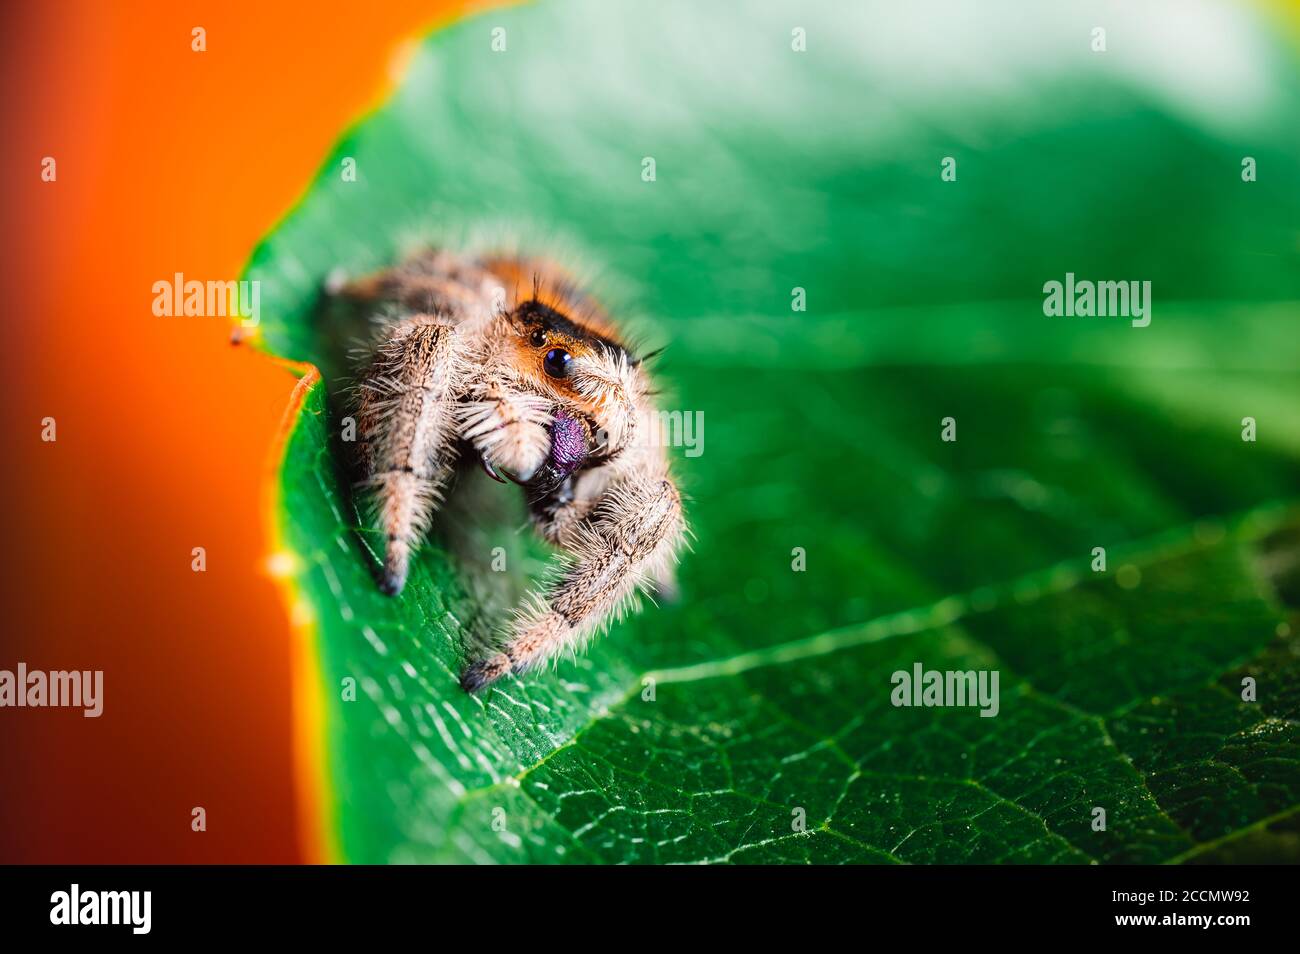 Femmina che salta ragno (Phidippus regius) strisciando su una foglia verde e coprendo il suo occhio. Macro, occhi grandi, dettagli nitidi. Bellissimi occhi grandi e grande fan Foto Stock